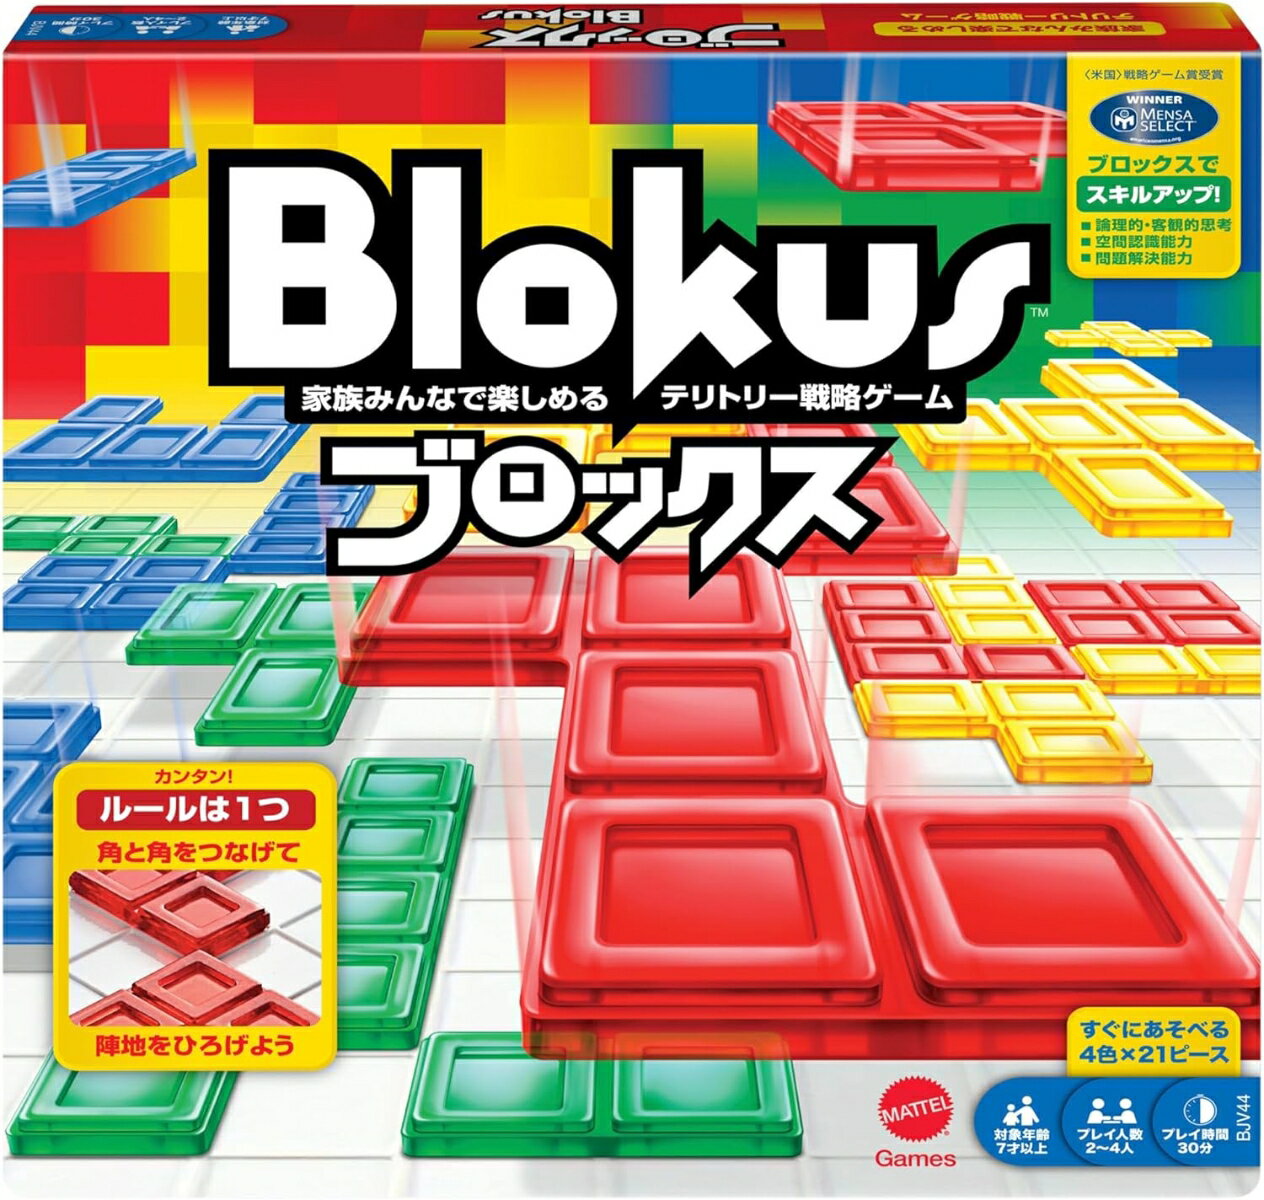 マテルゲーム(Mattel Game) ブロックス Blokus【知育ゲーム】【ボードゲーム】【7...